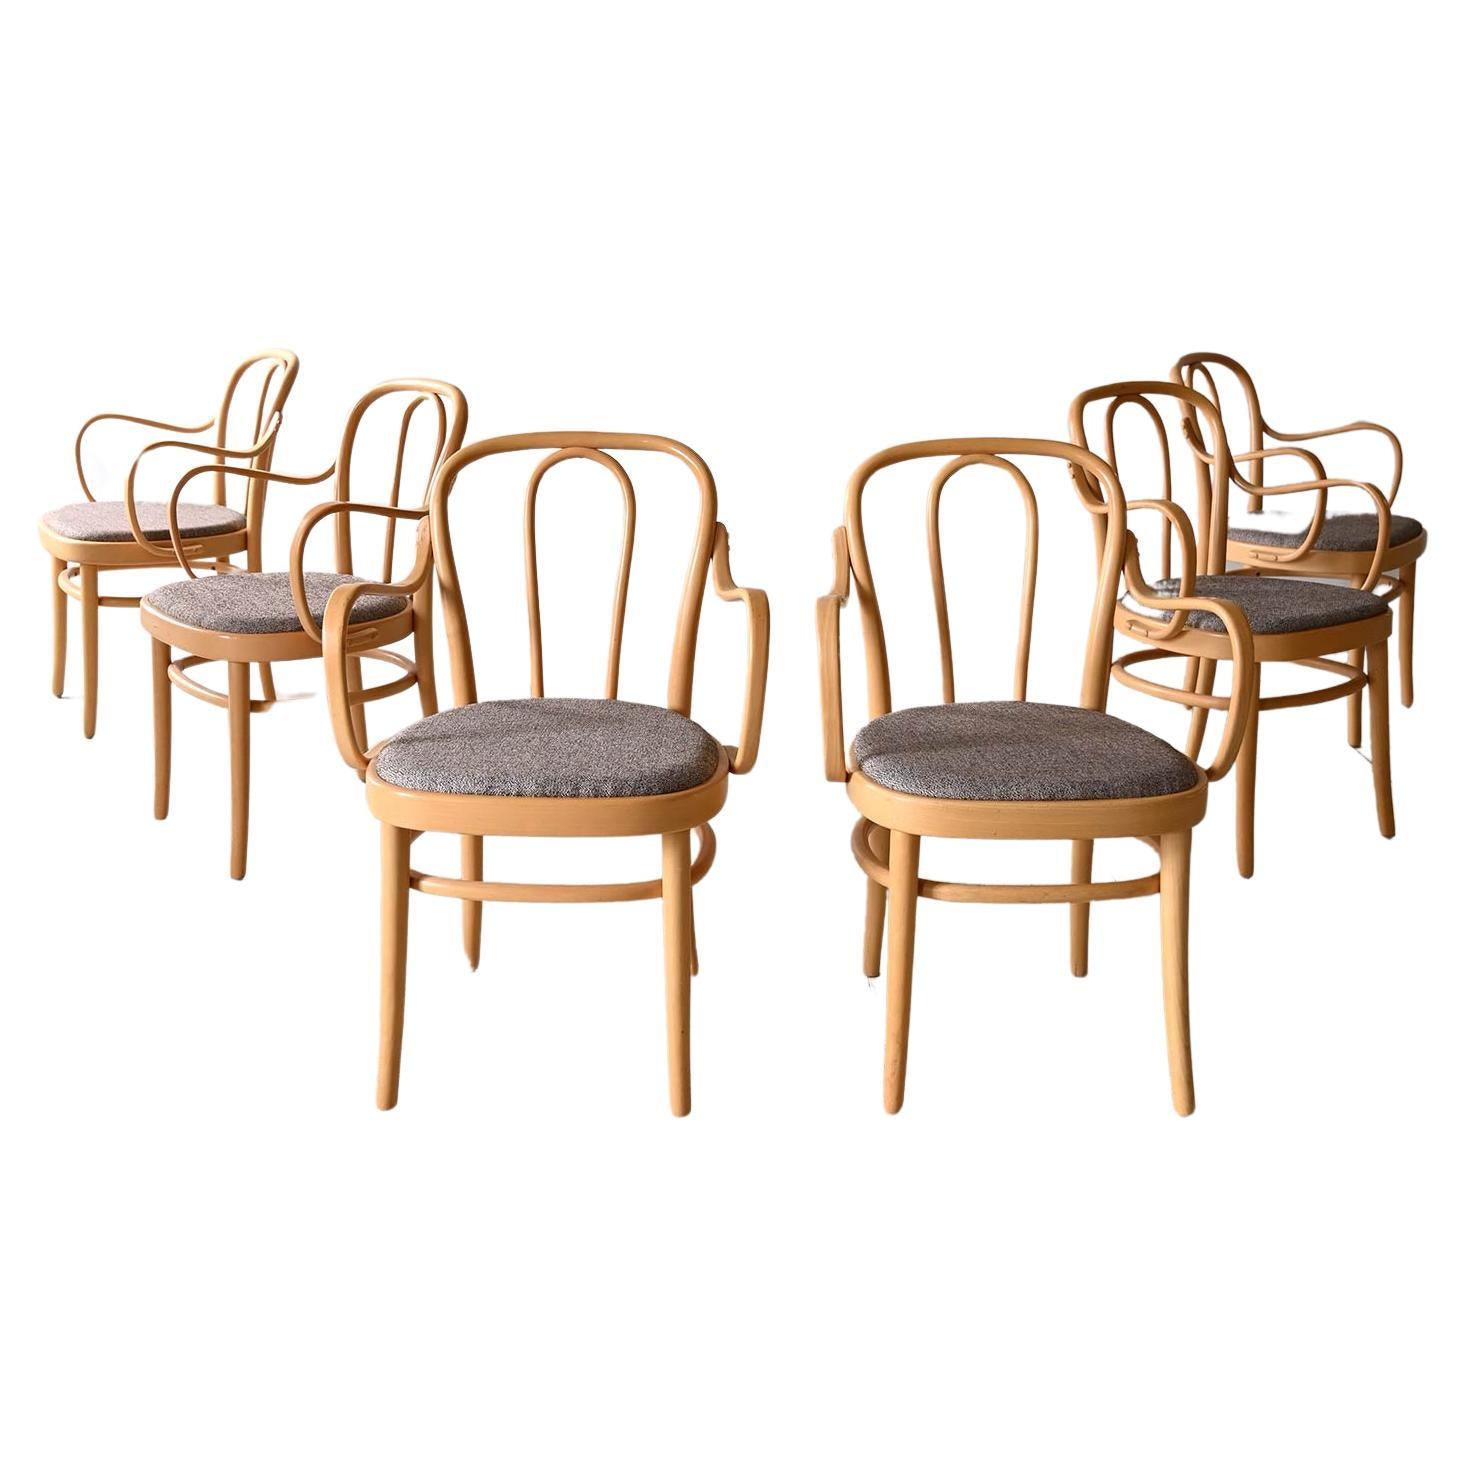 6 sedie dell'azienda Gemla modello "Wien" For Sale